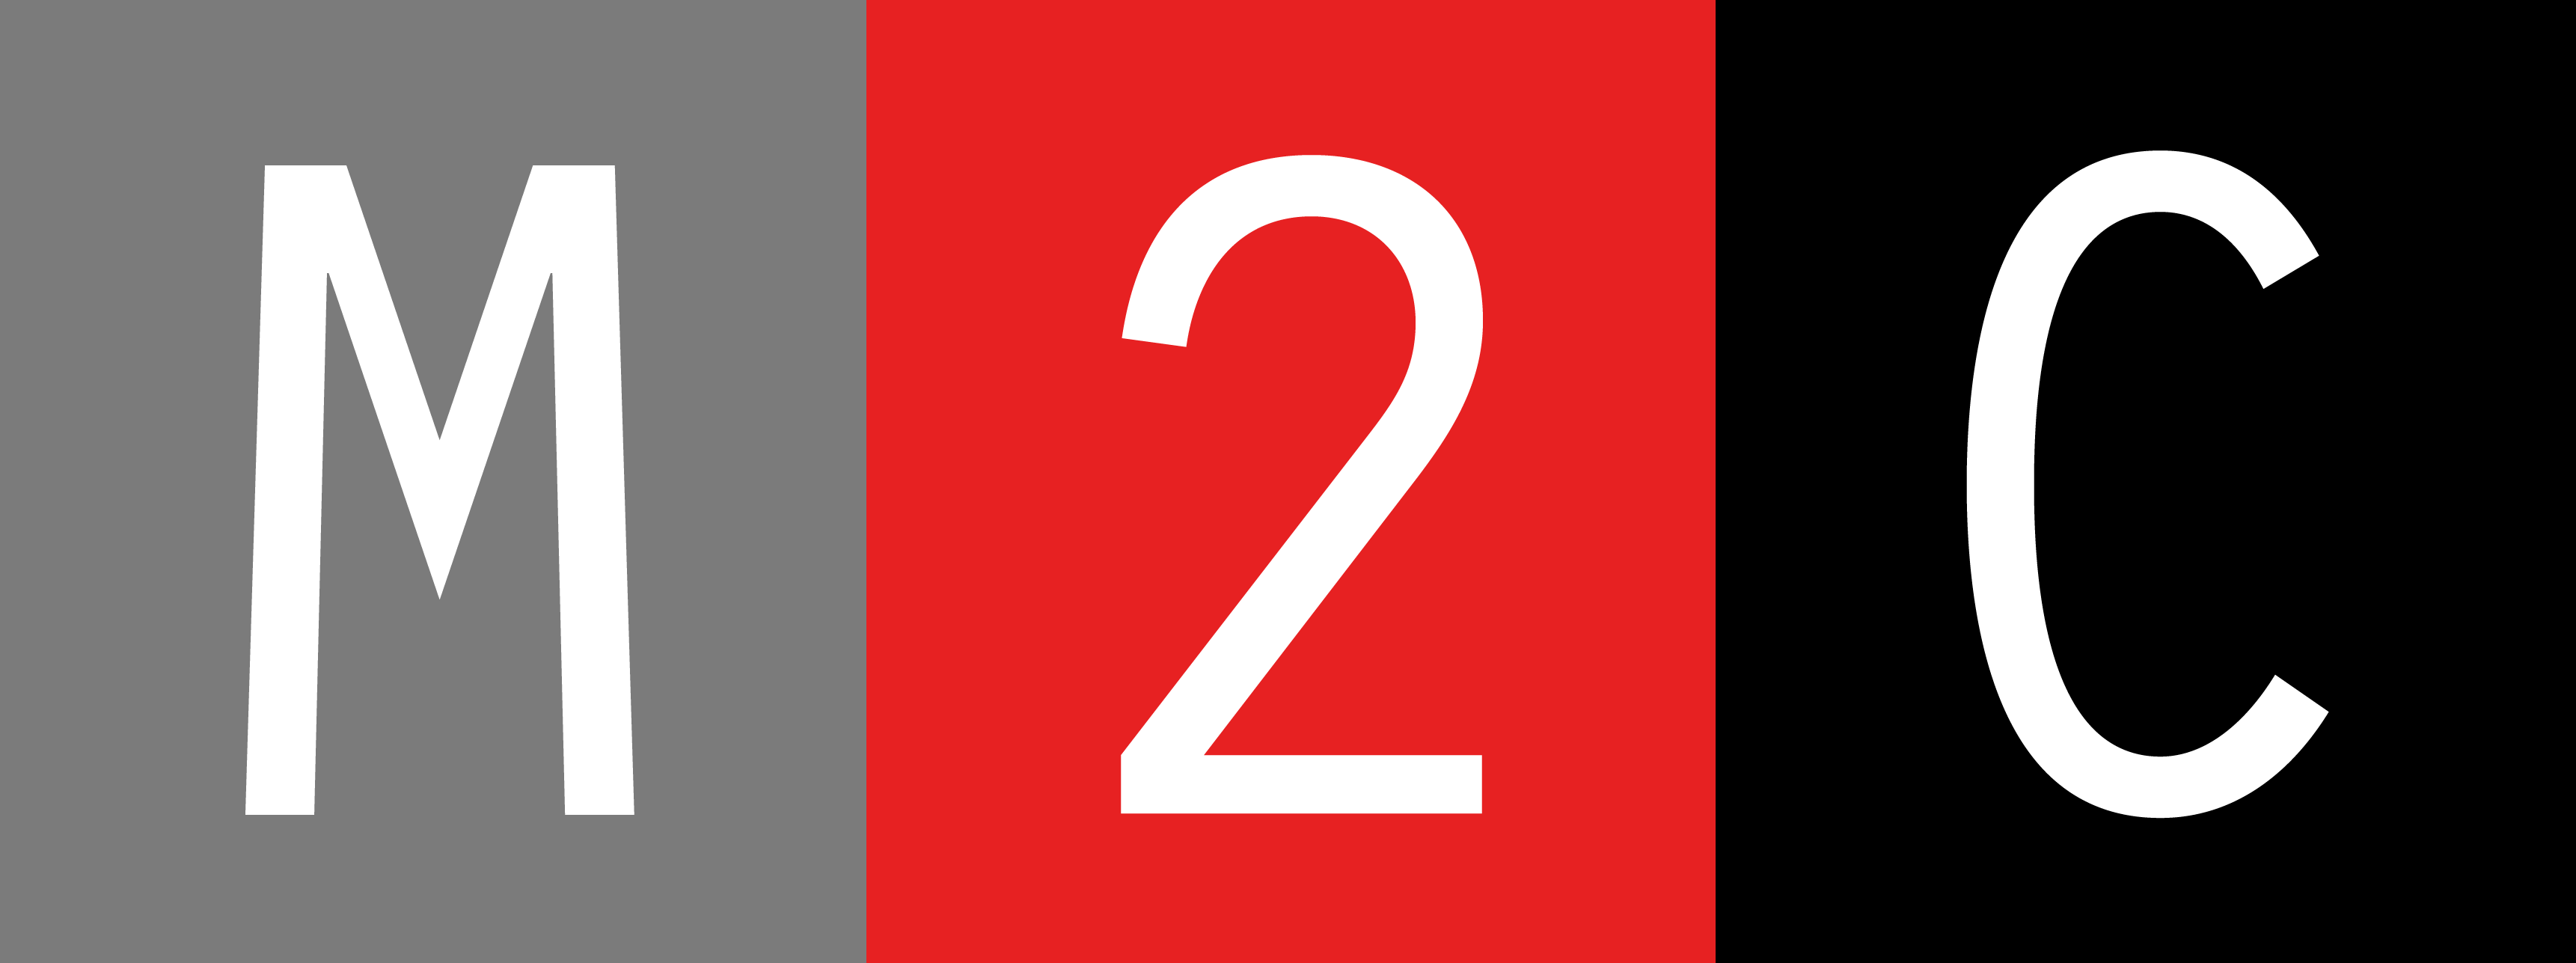 Logo: M2C